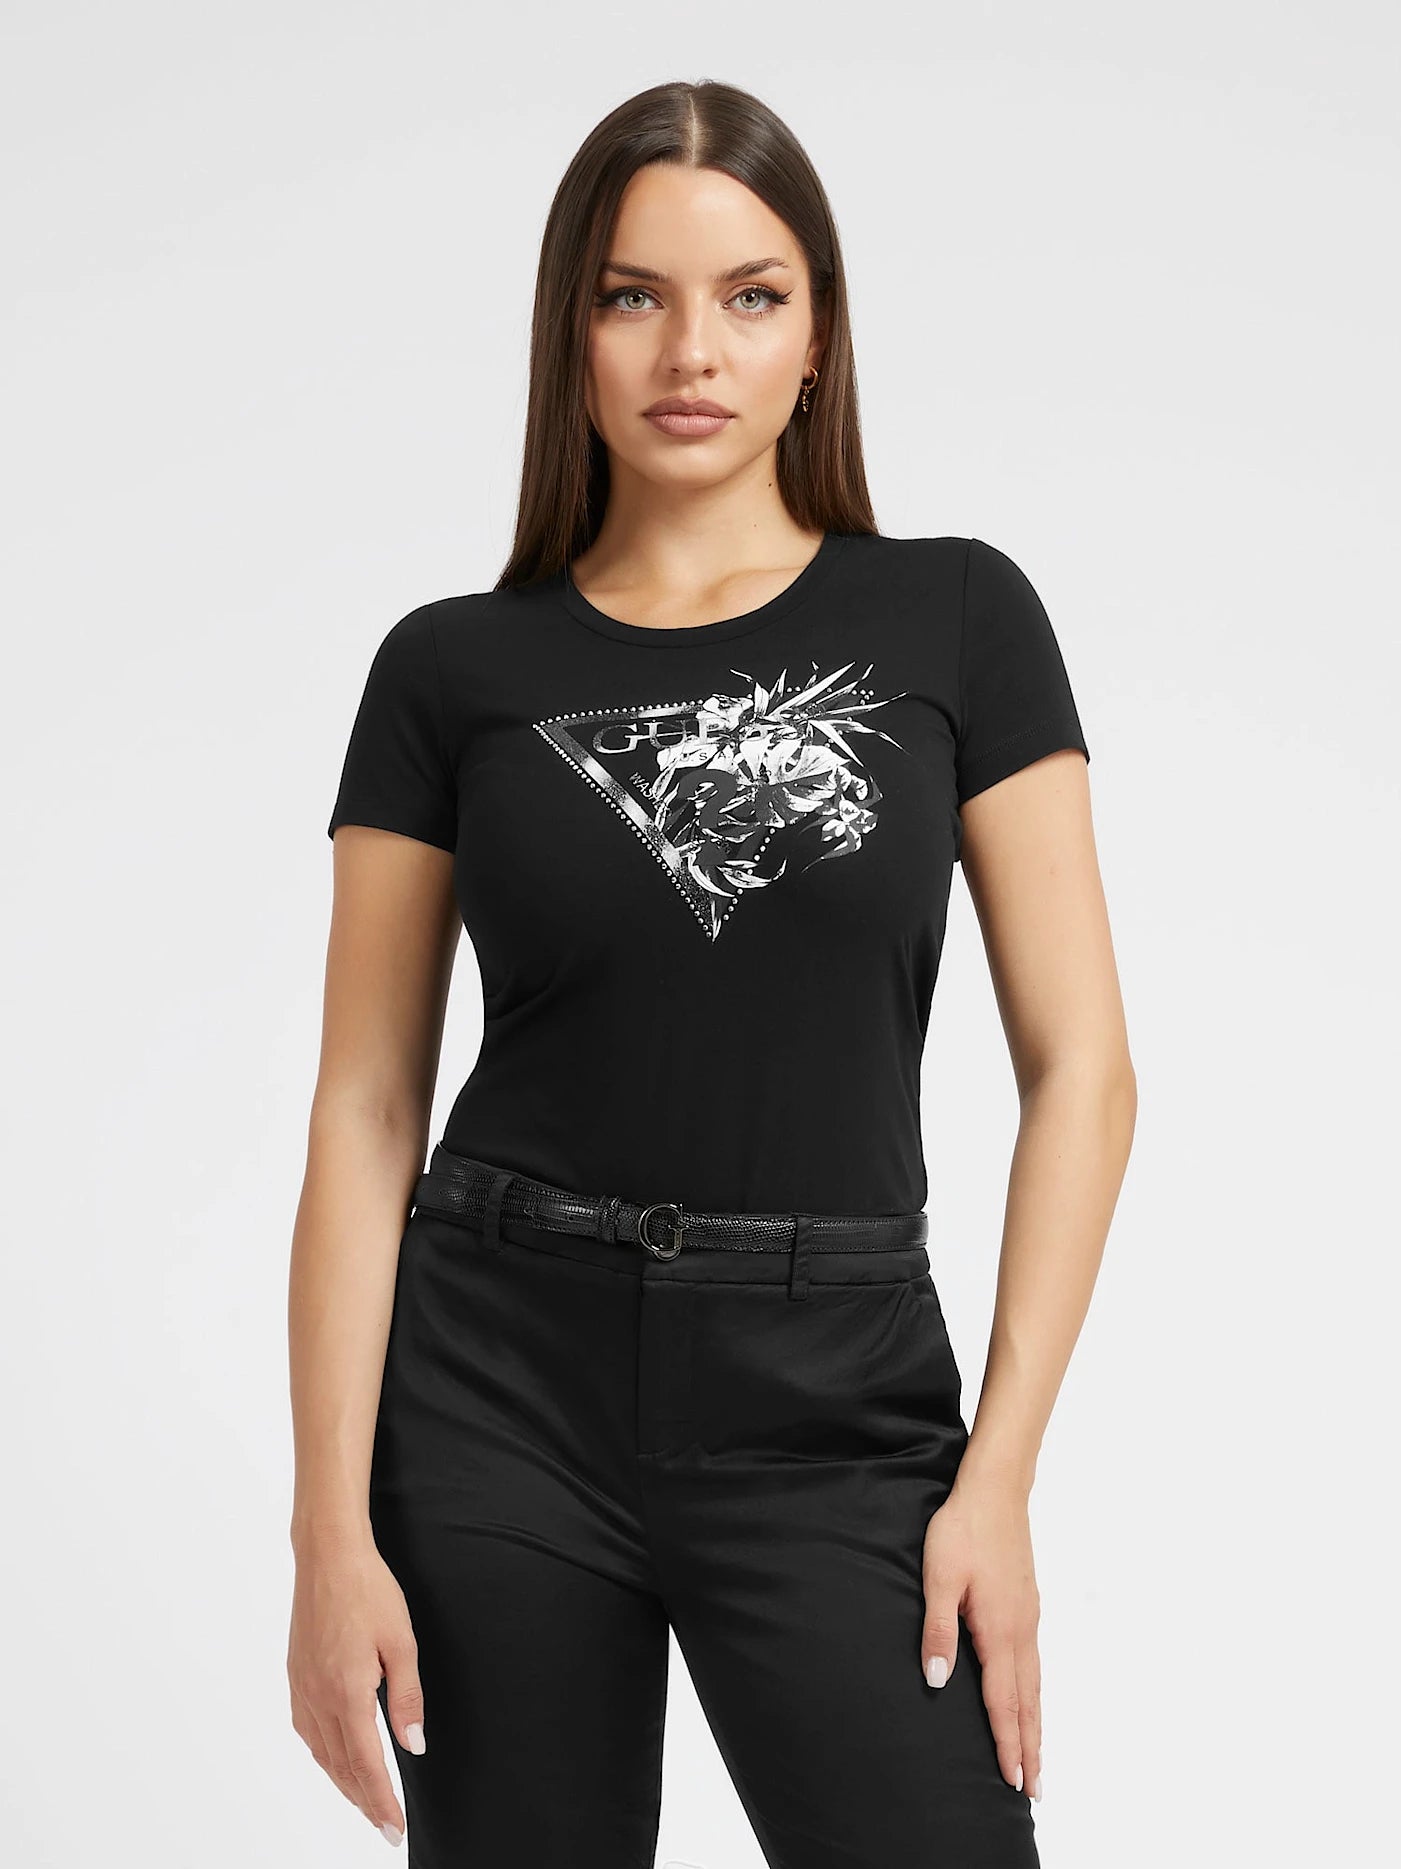 Guess Damen T-Shirt Florales Logo-Dreieck